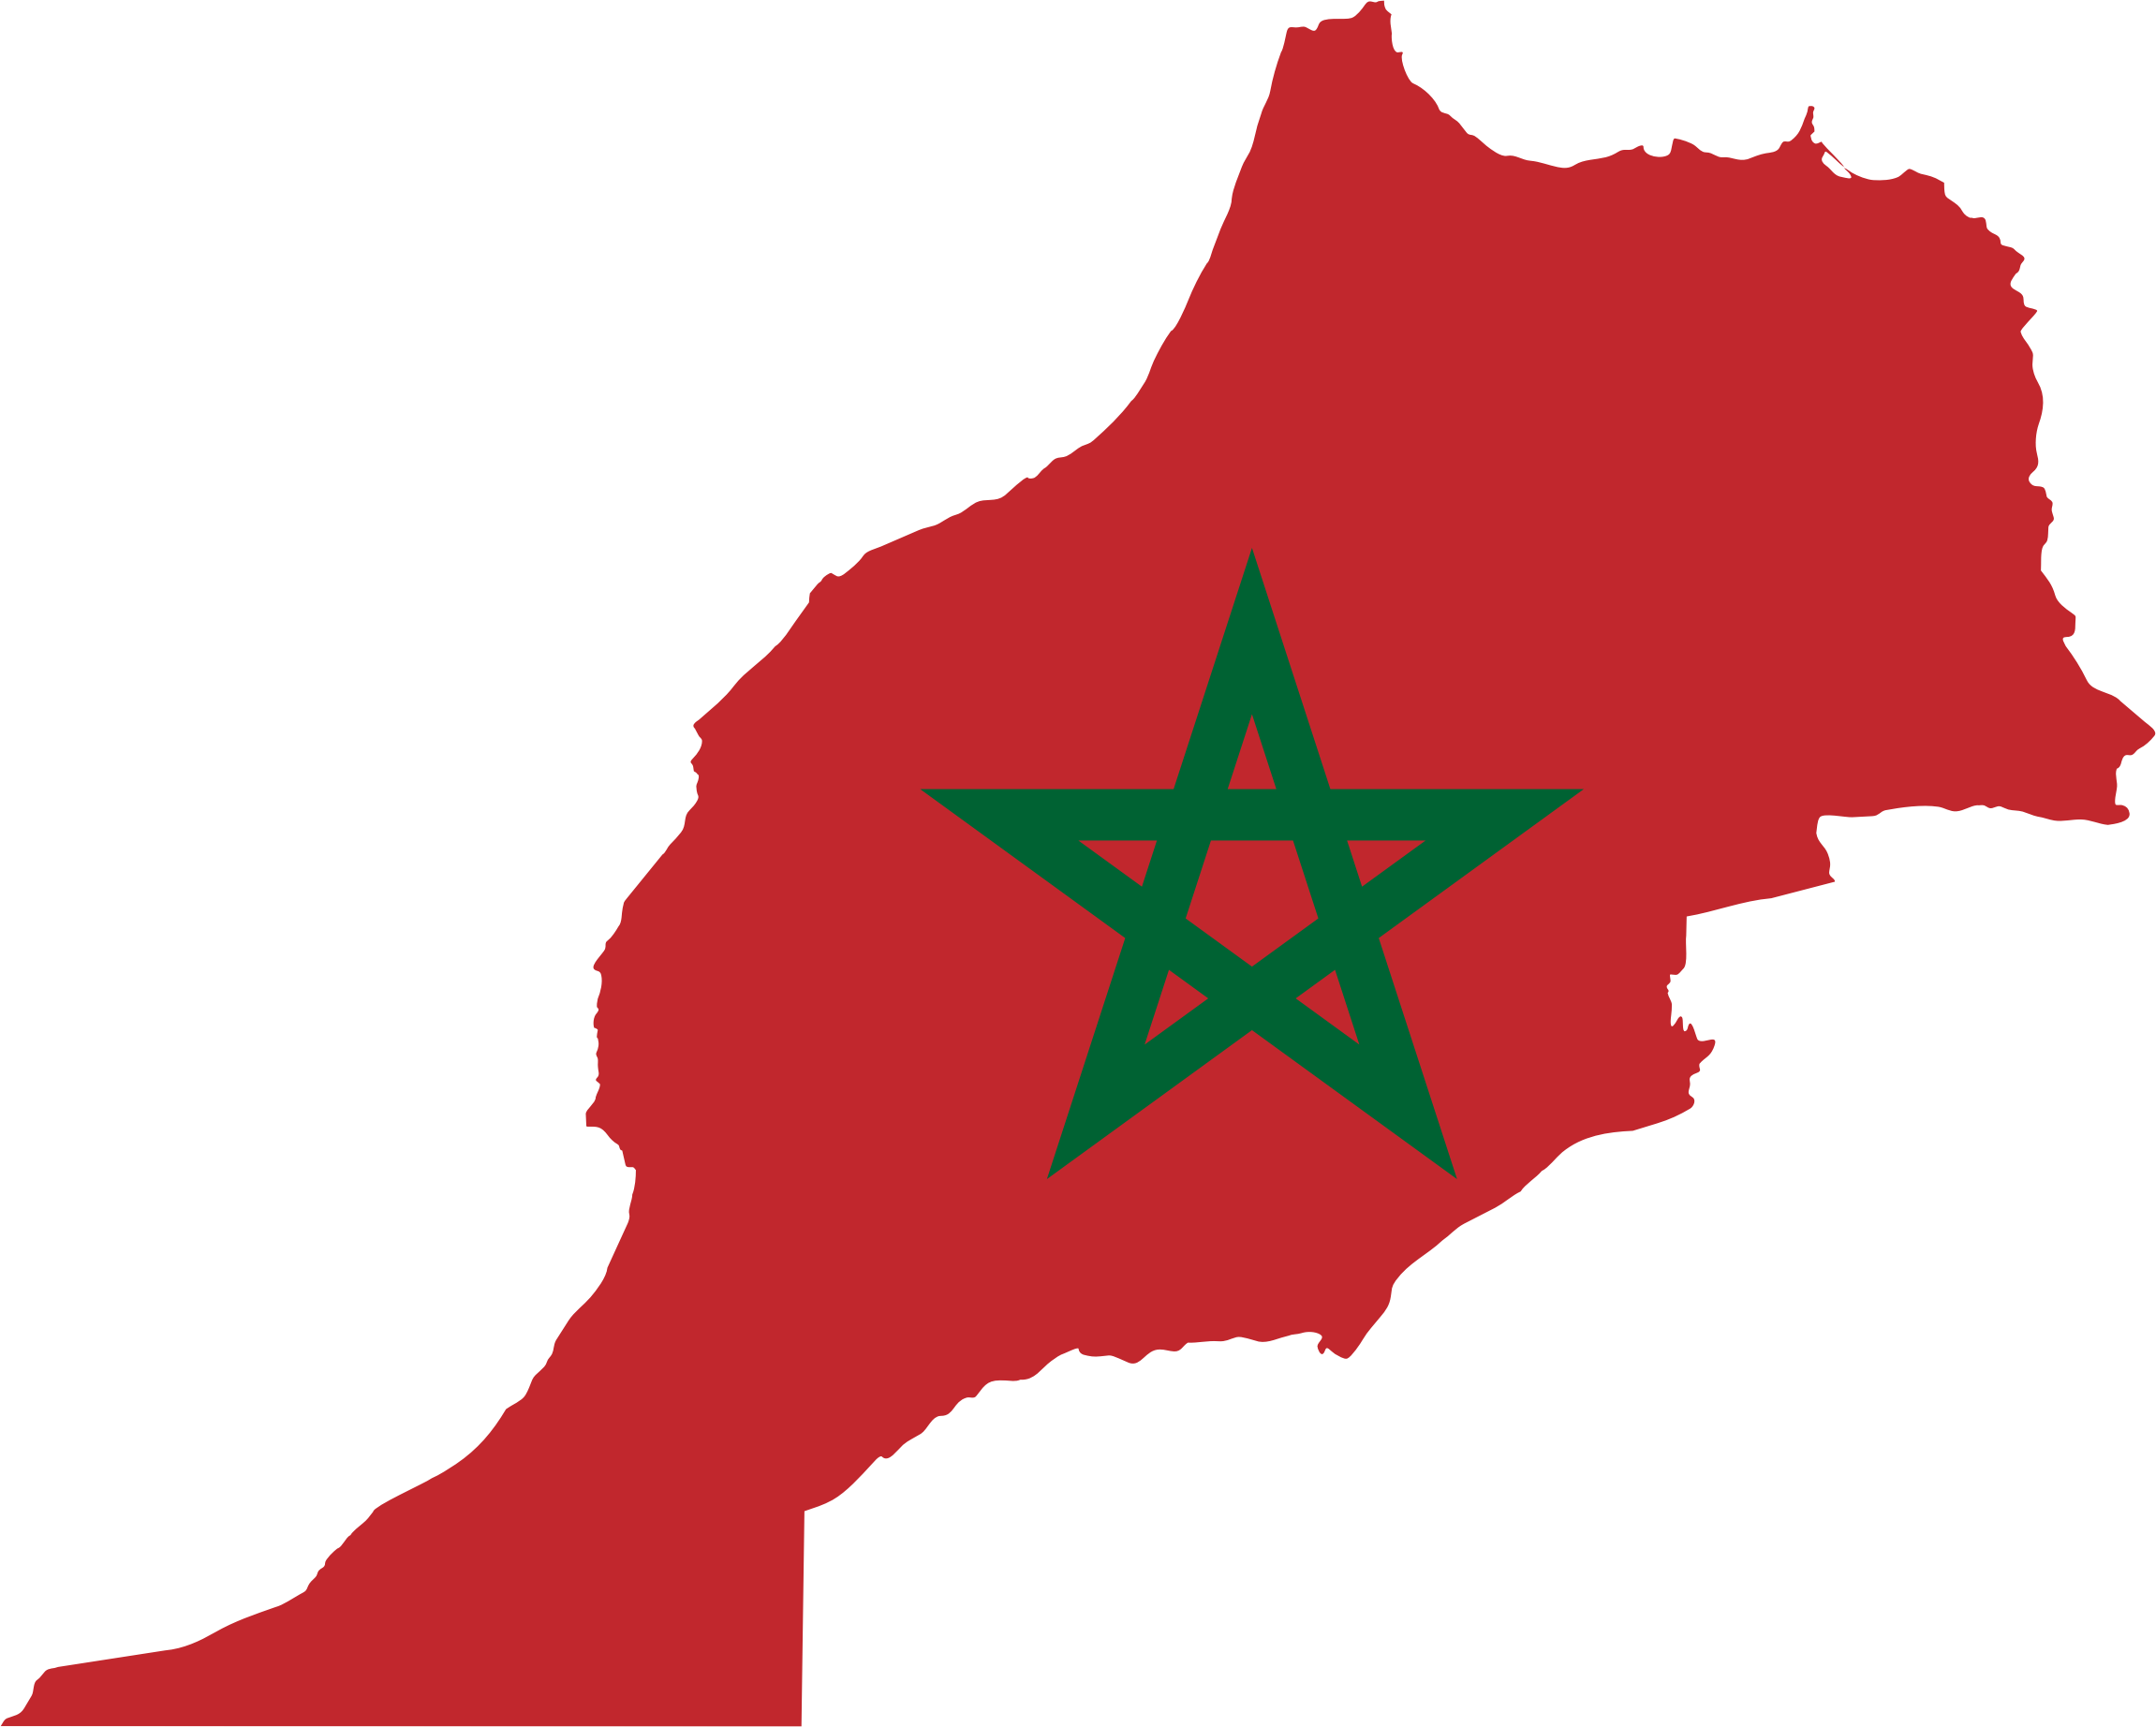 Morocco clipart - Clipground